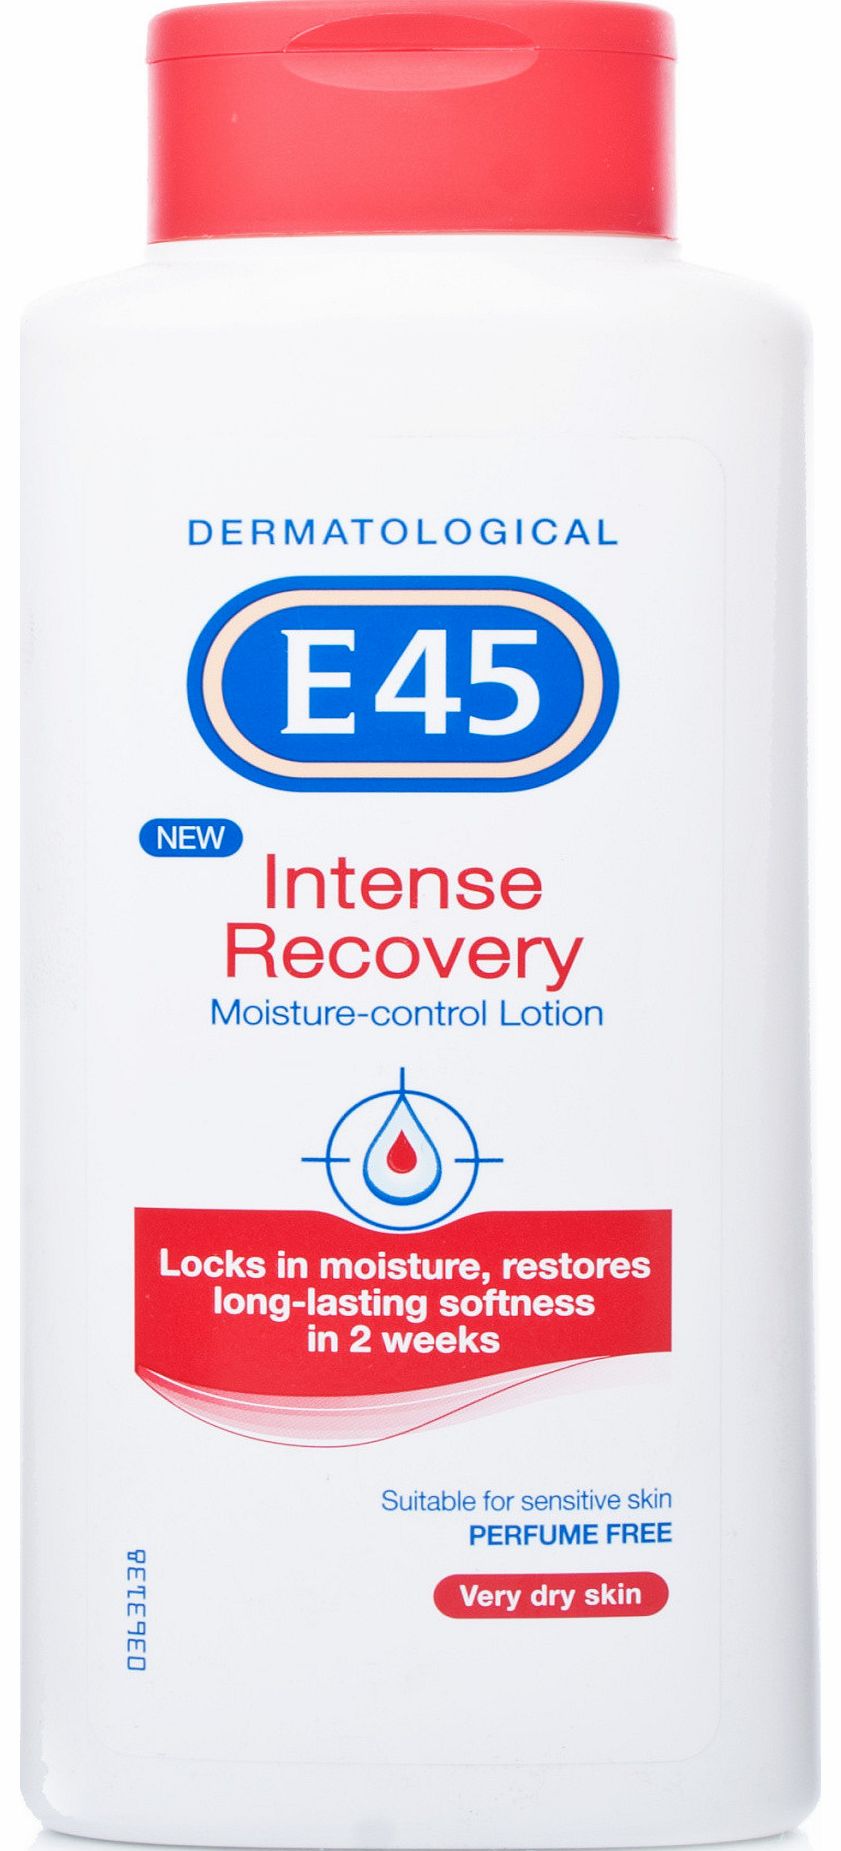 E45 Intense Recovery Lotion